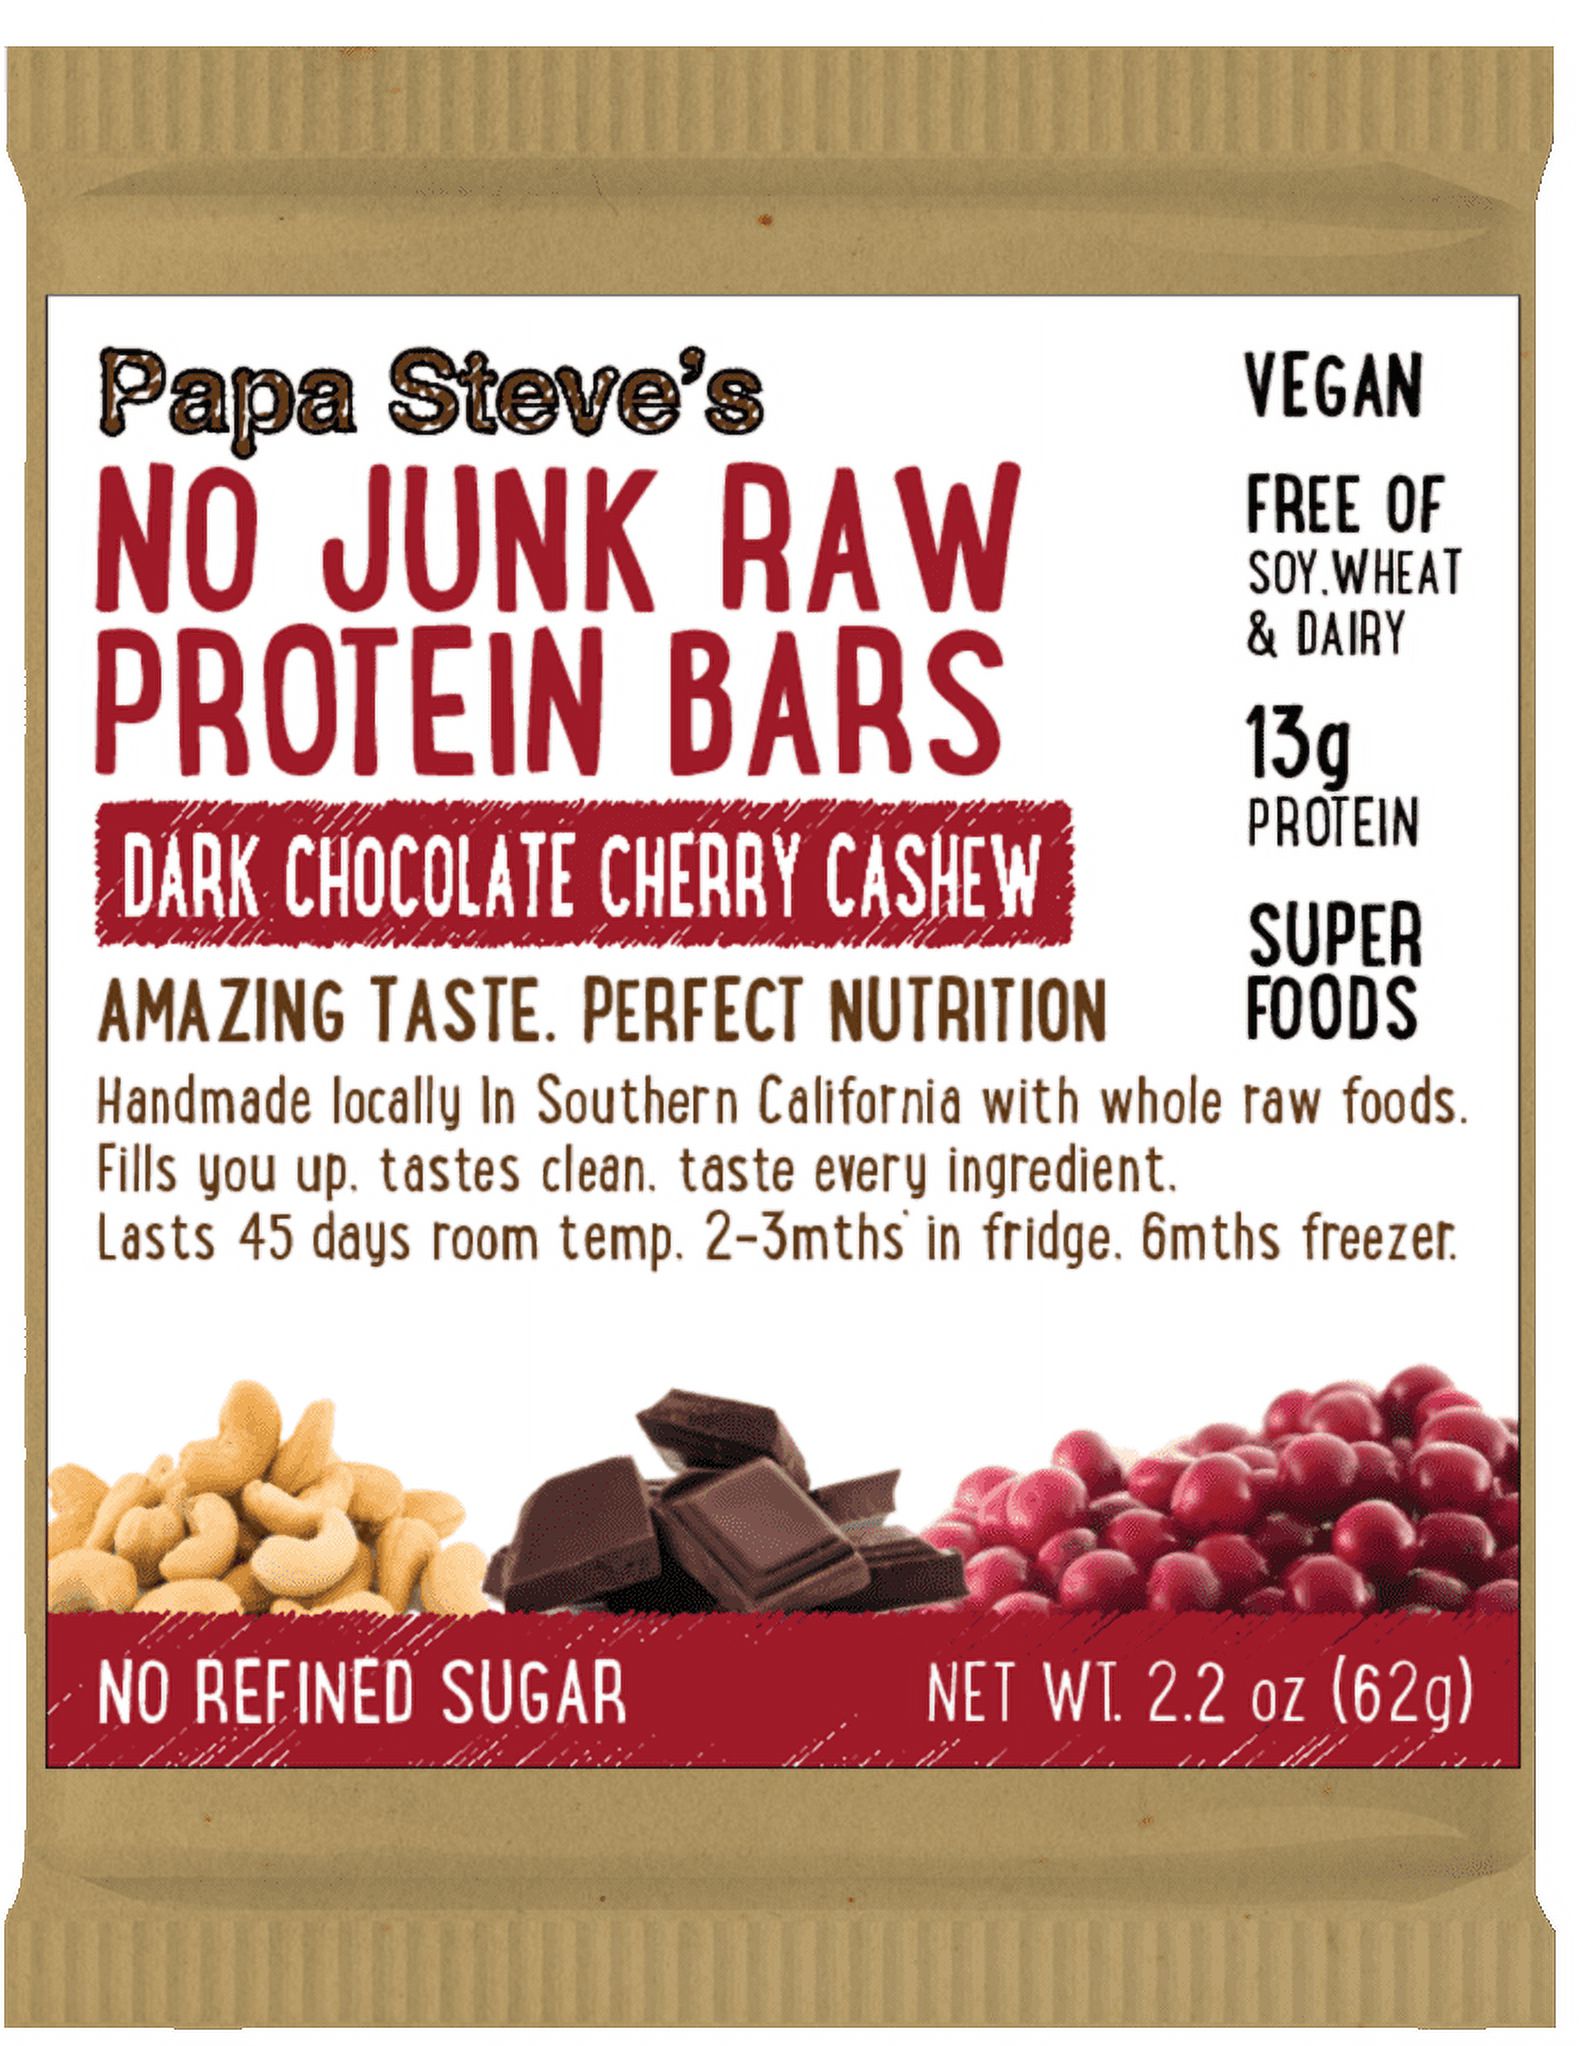 Papa Steve's No Junk Raw Vegan Protein Bars: Non GMO, Gluten Free, 100% Natural, Hand-Made Weekly - Dark Chocolate Cherry Cashew (Pack of 10) - image 1 of 4